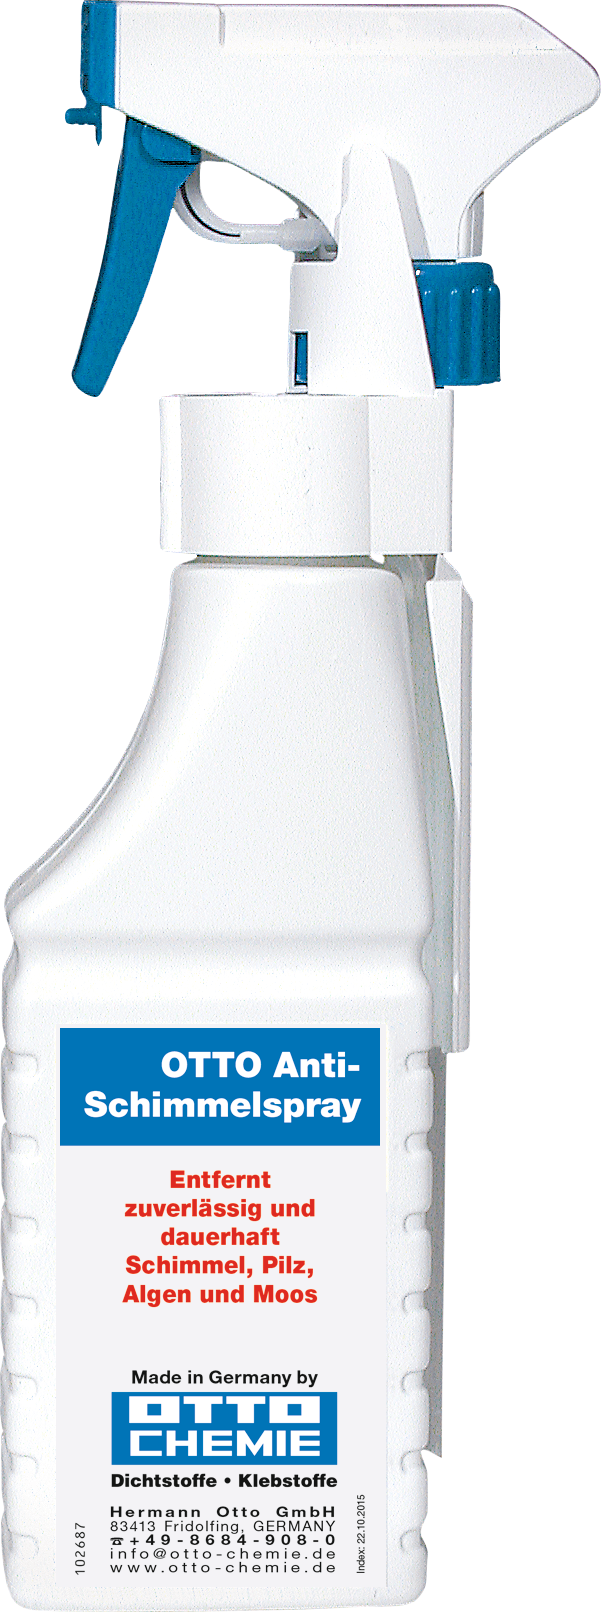 OTTO Anti-Schimmelspray 250ml